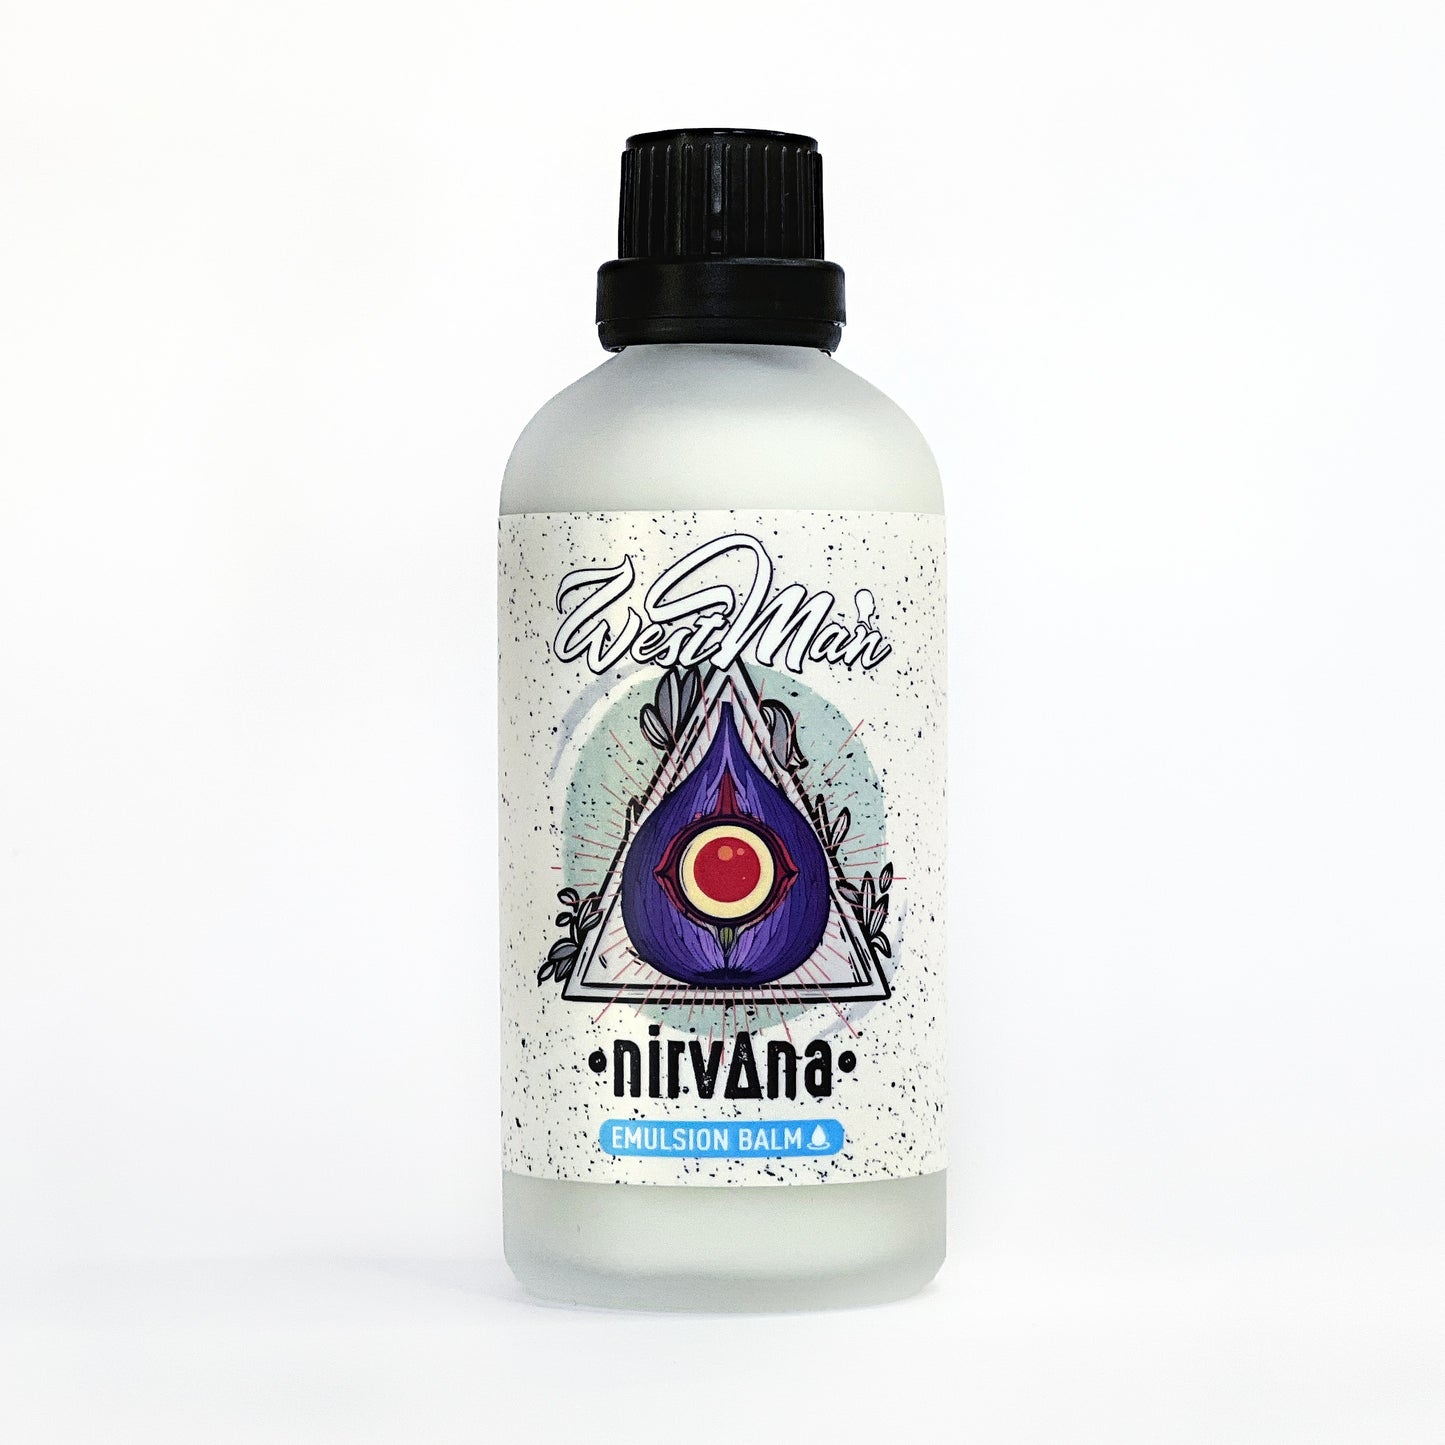 Nirvana Aftershave Emulsion Balm